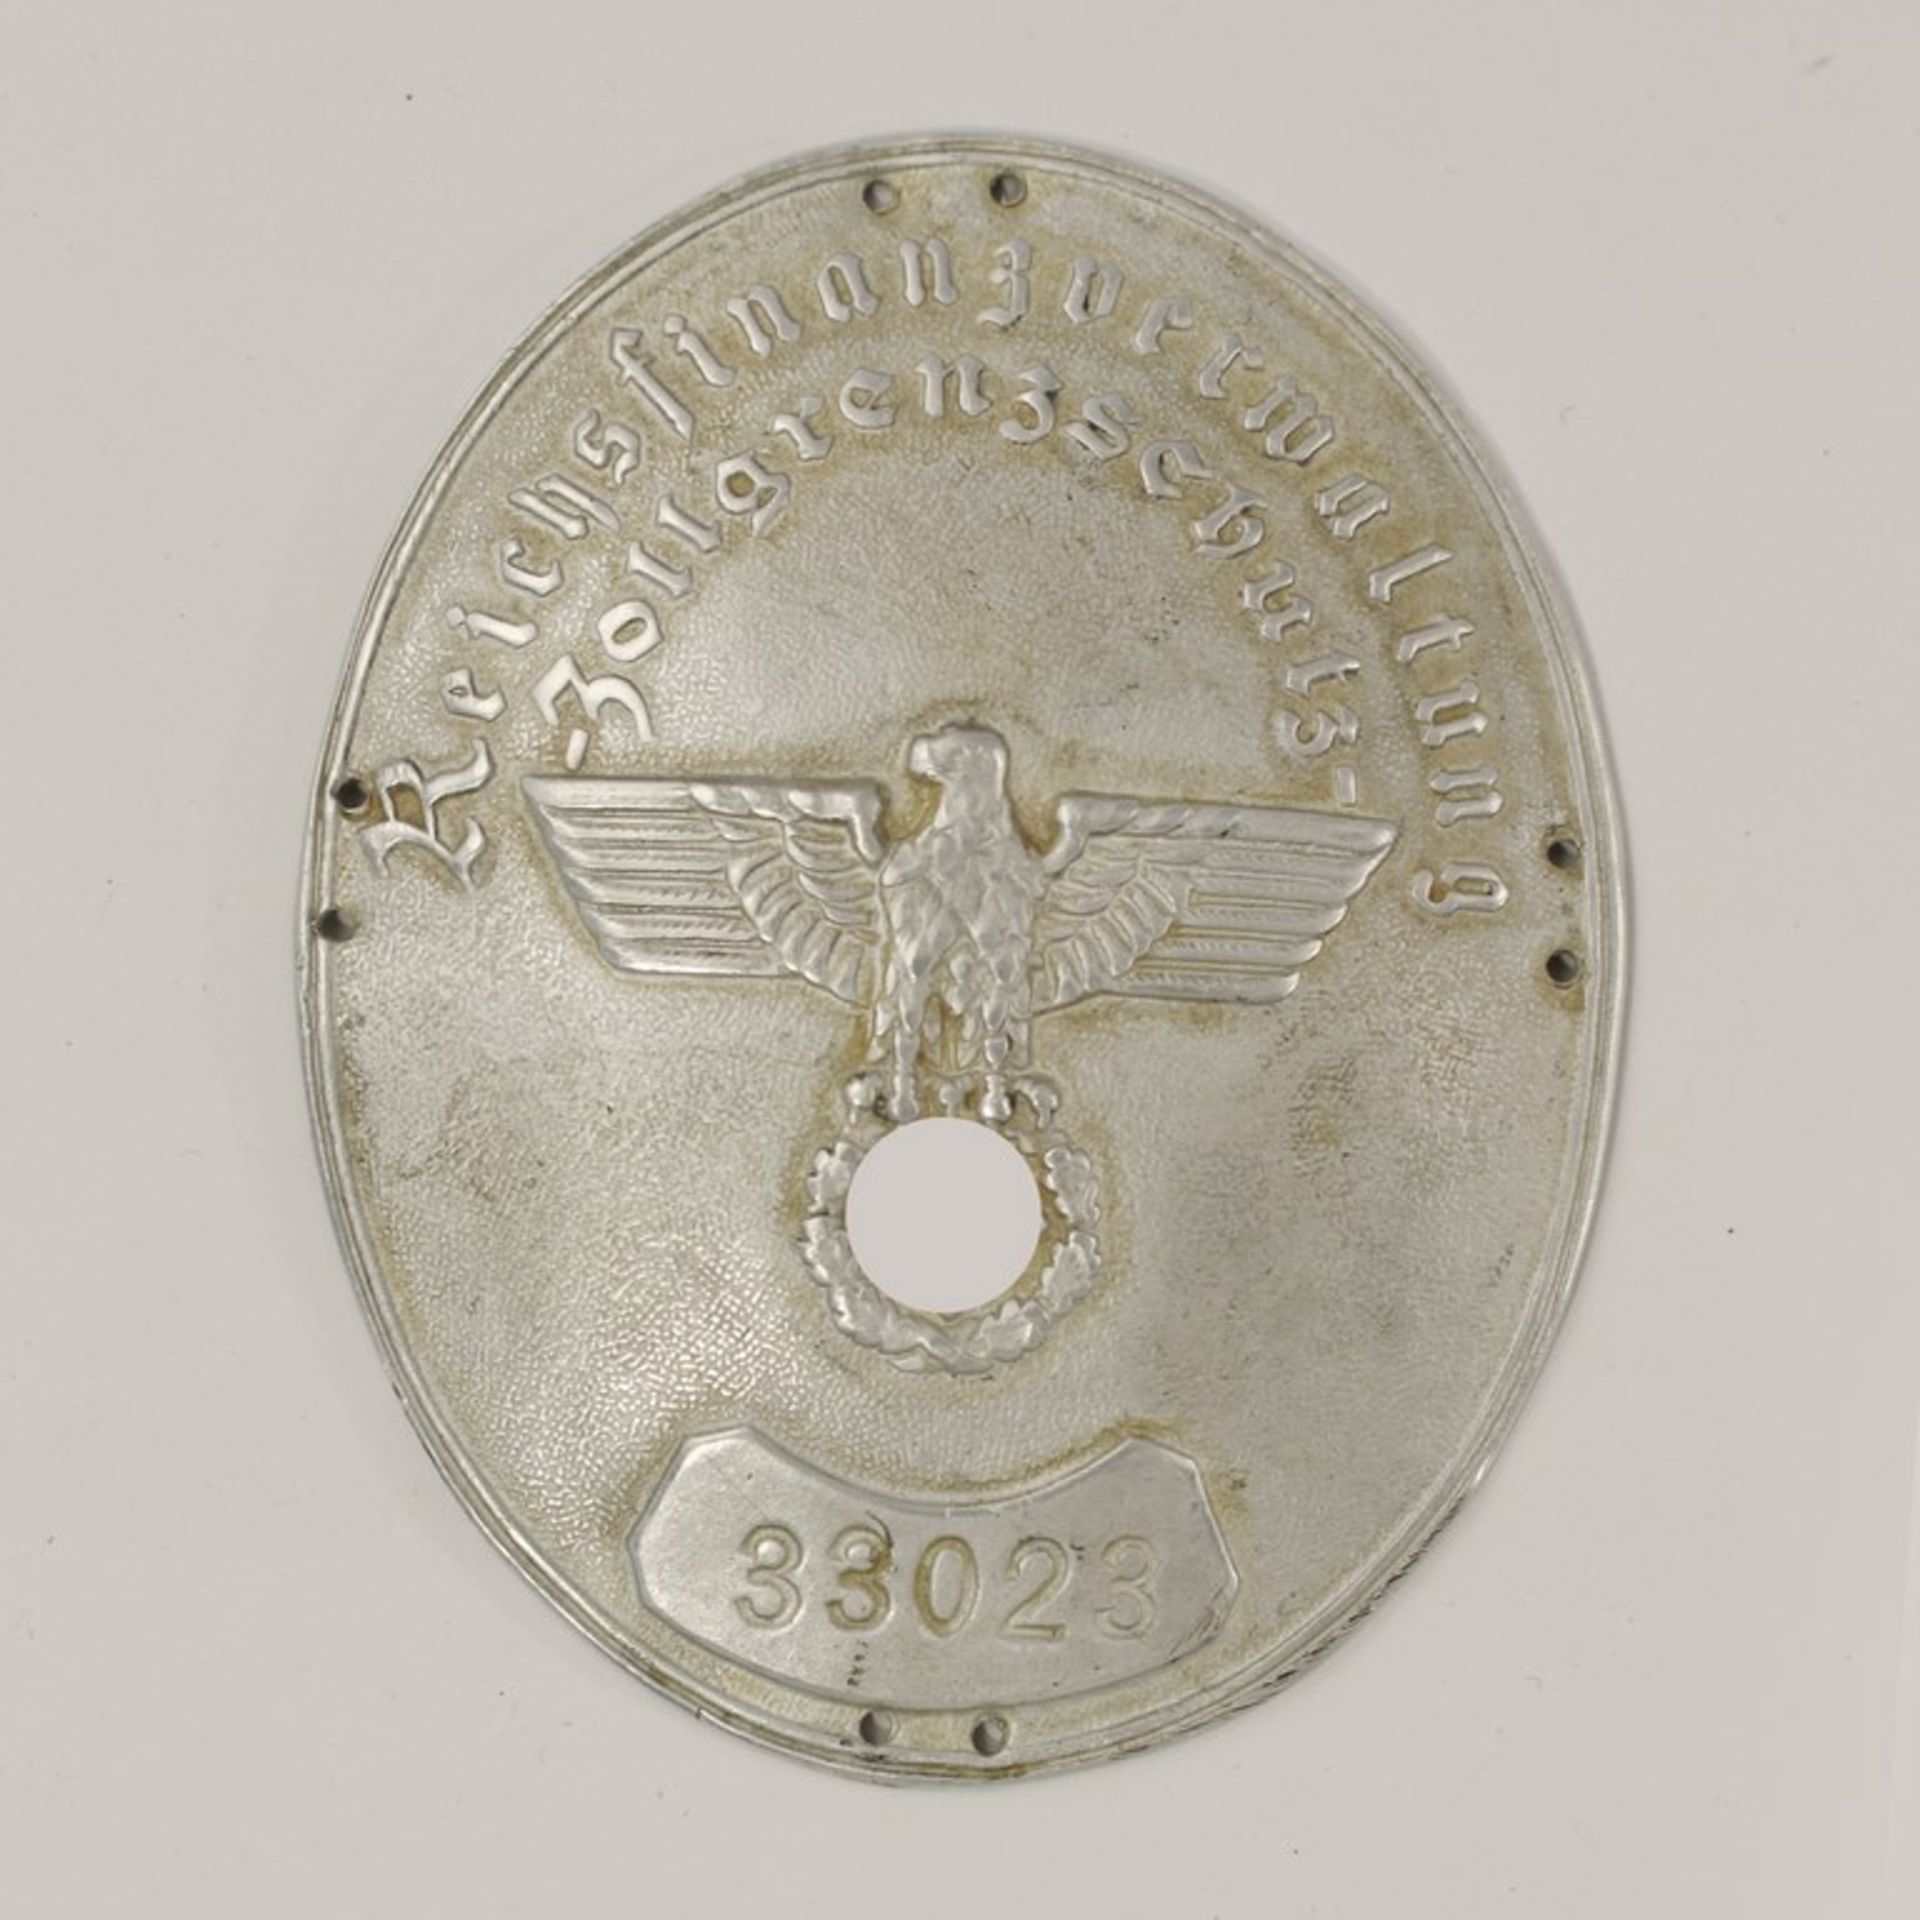 Ärmelschild - 3.Reich ovales Schild, Leichtmetall, bez. "Reichsfinanzverwaltung-Zollgrenzschutz",